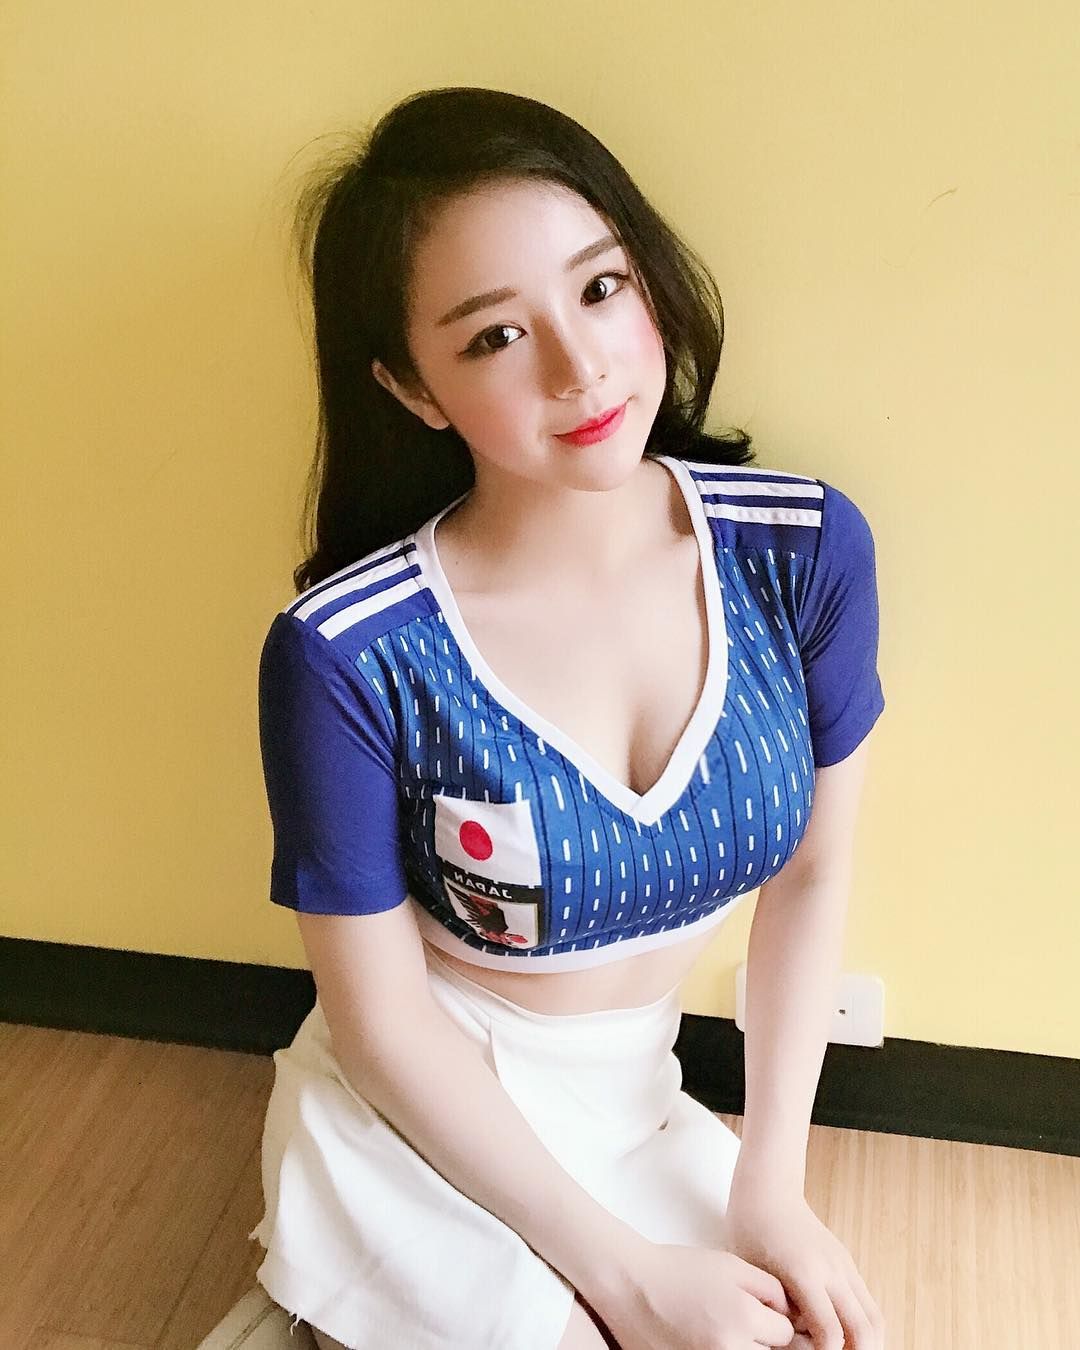 Nguyễn Thuỷ Tiên人物简历关于她持续追踪